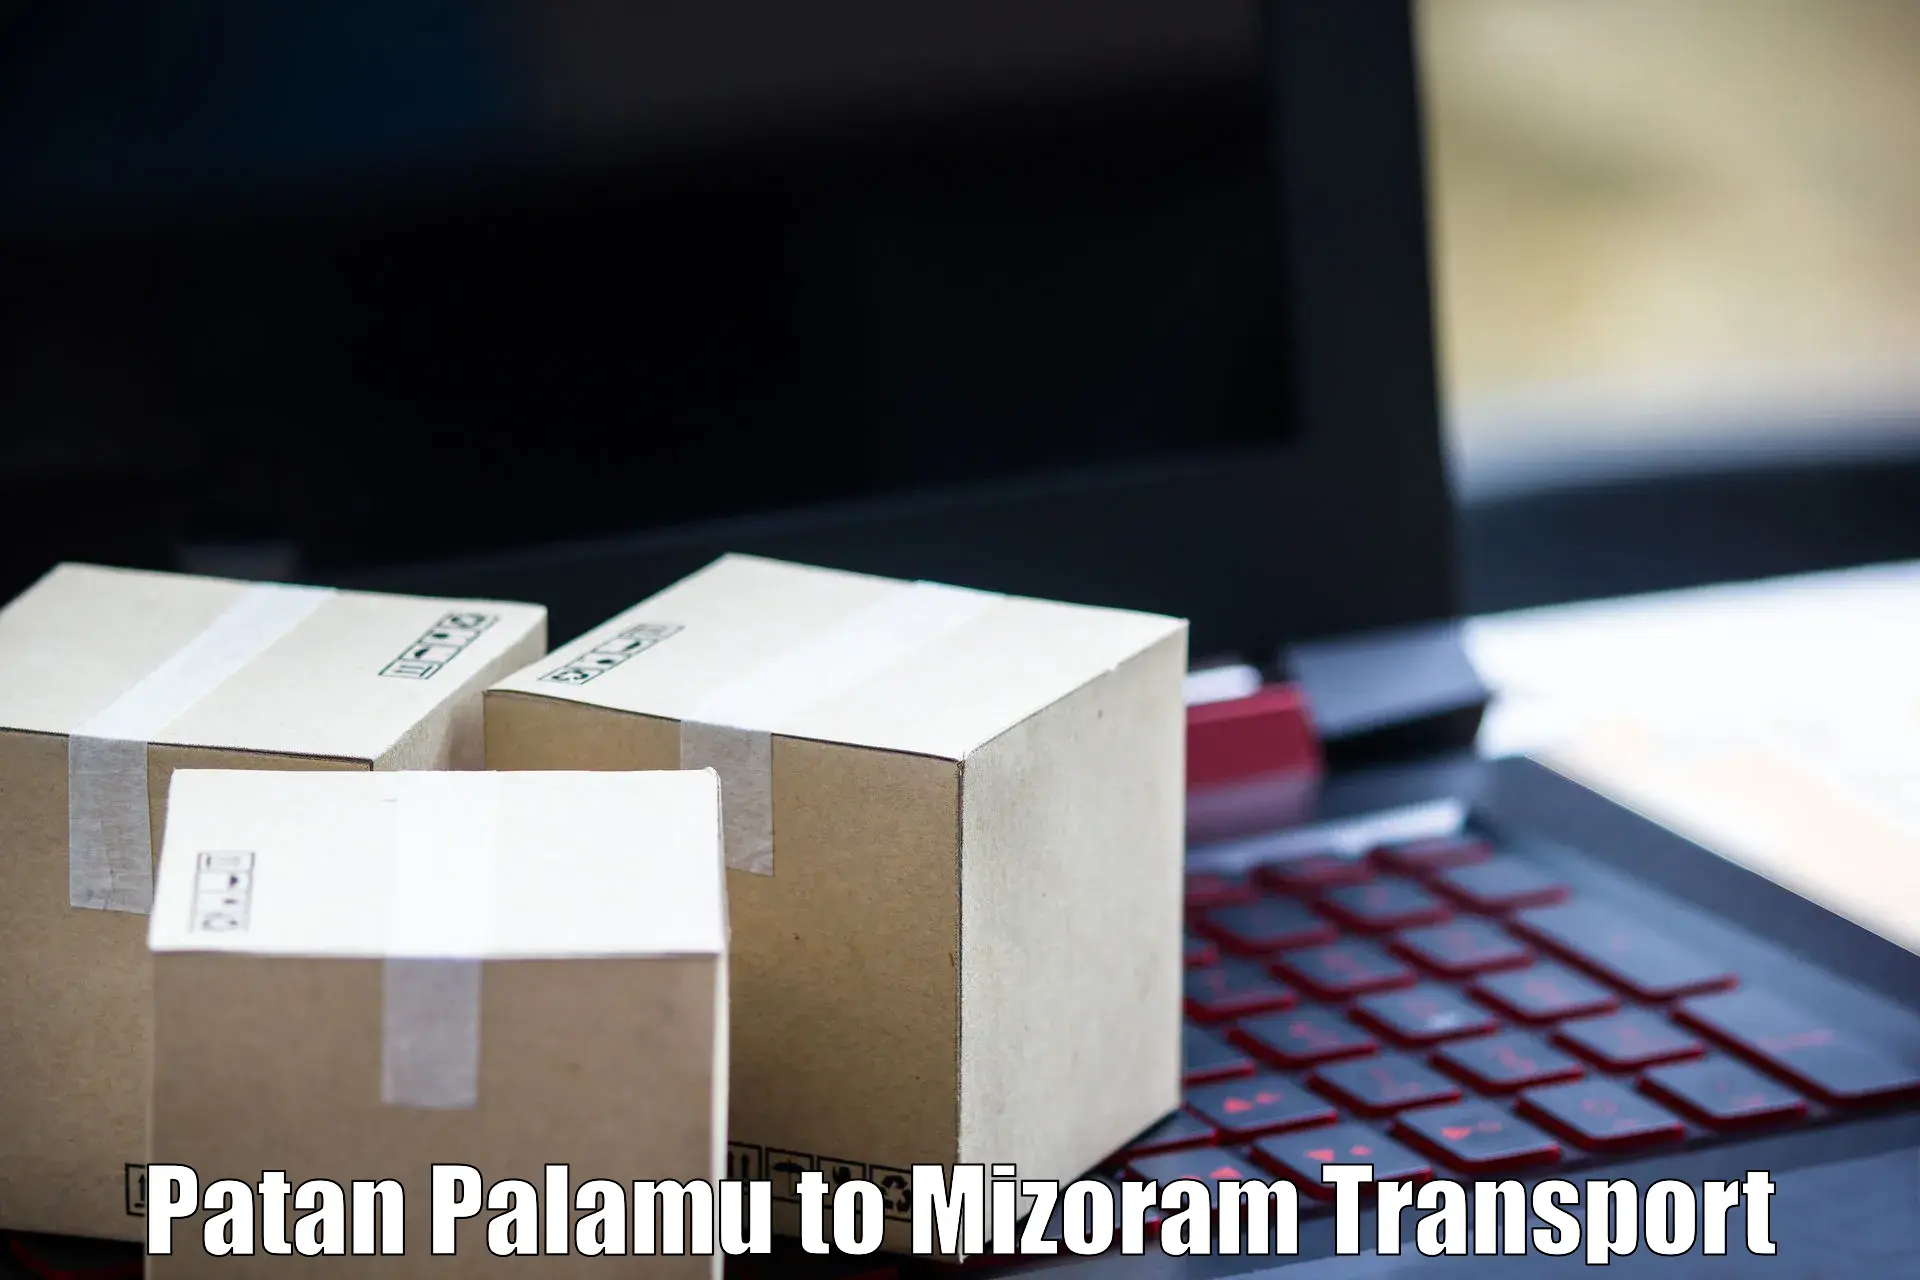 Lorry transport service Patan Palamu to Mizoram